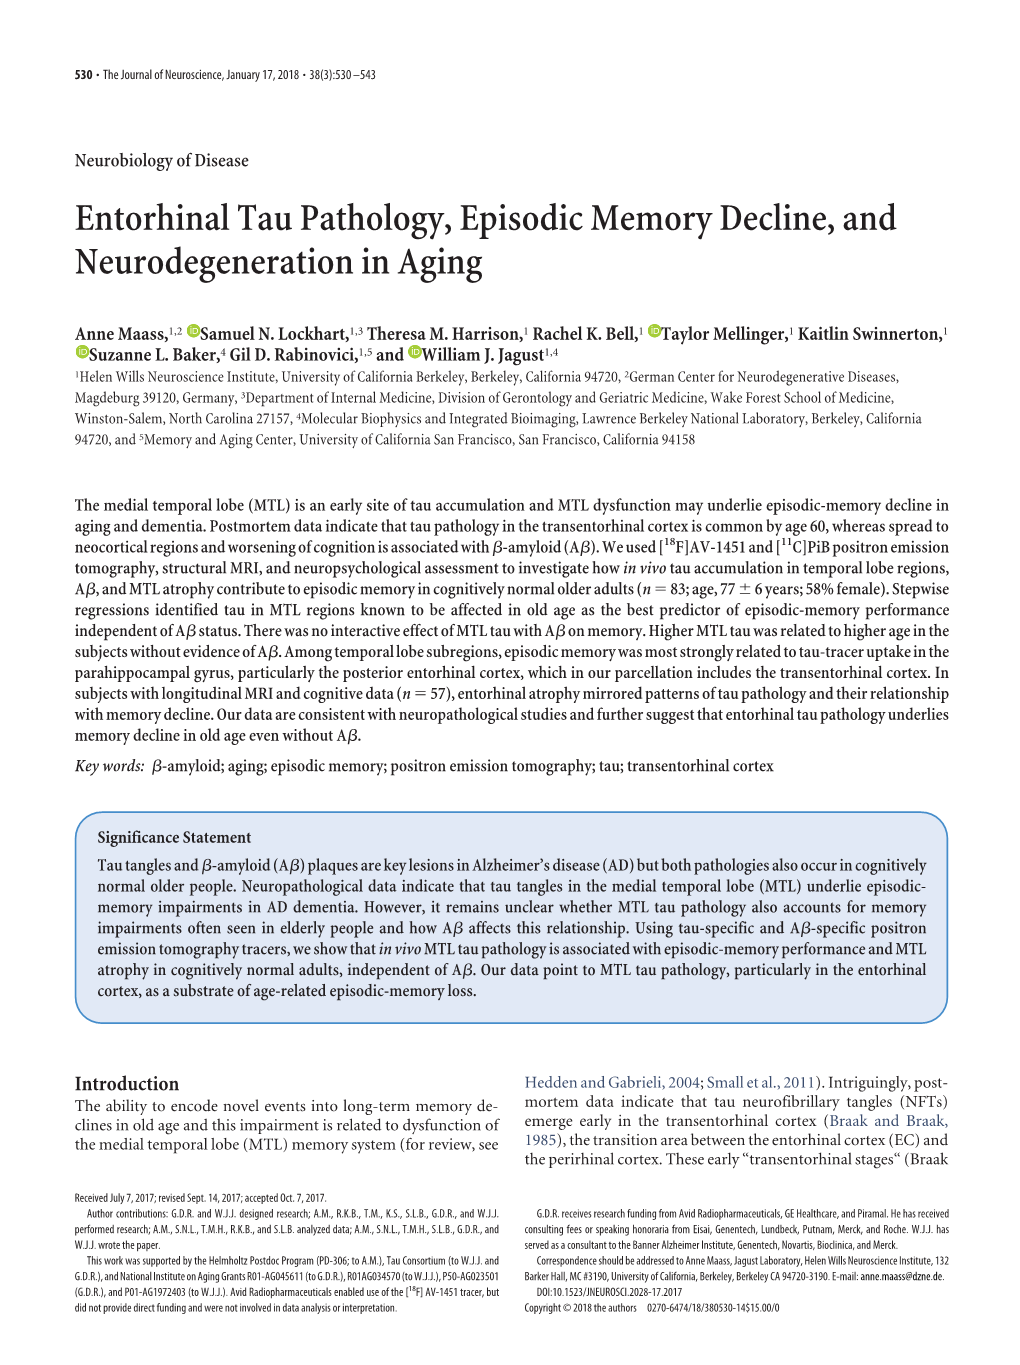 Entorhinal Tau Pathology, Episodic Memory Decline, and Neurodegeneration in Aging